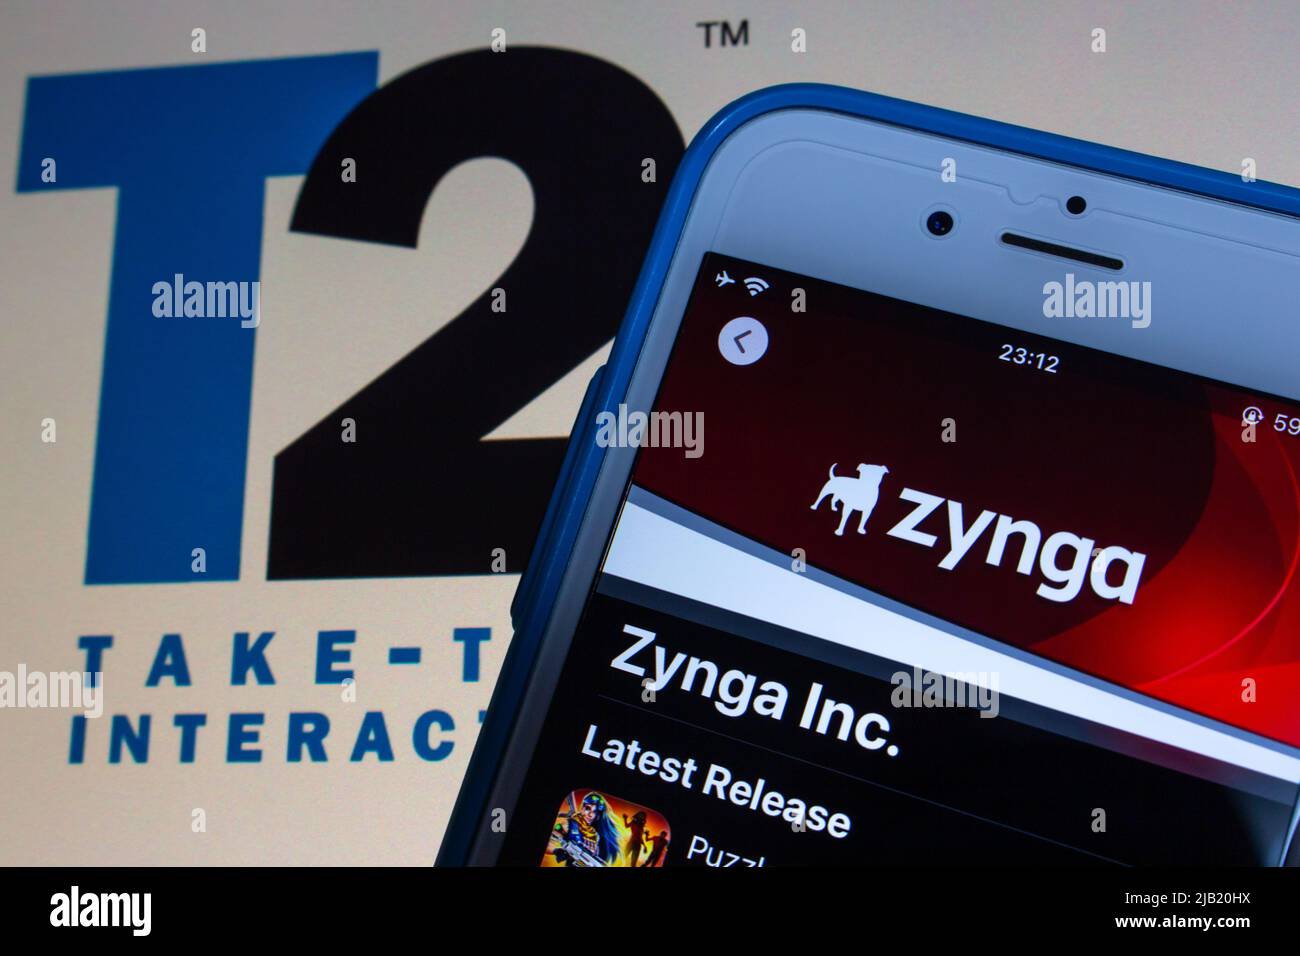 Ein US-amerikanischer Entwickler von Social Games Zynga Inc. Für App Sore auf dem iPhone und das Take-Two Interactive-Logo. Take-Two gab im Januar 2022 seine Absicht bekannt, Zynga zu erwerben Stockfoto